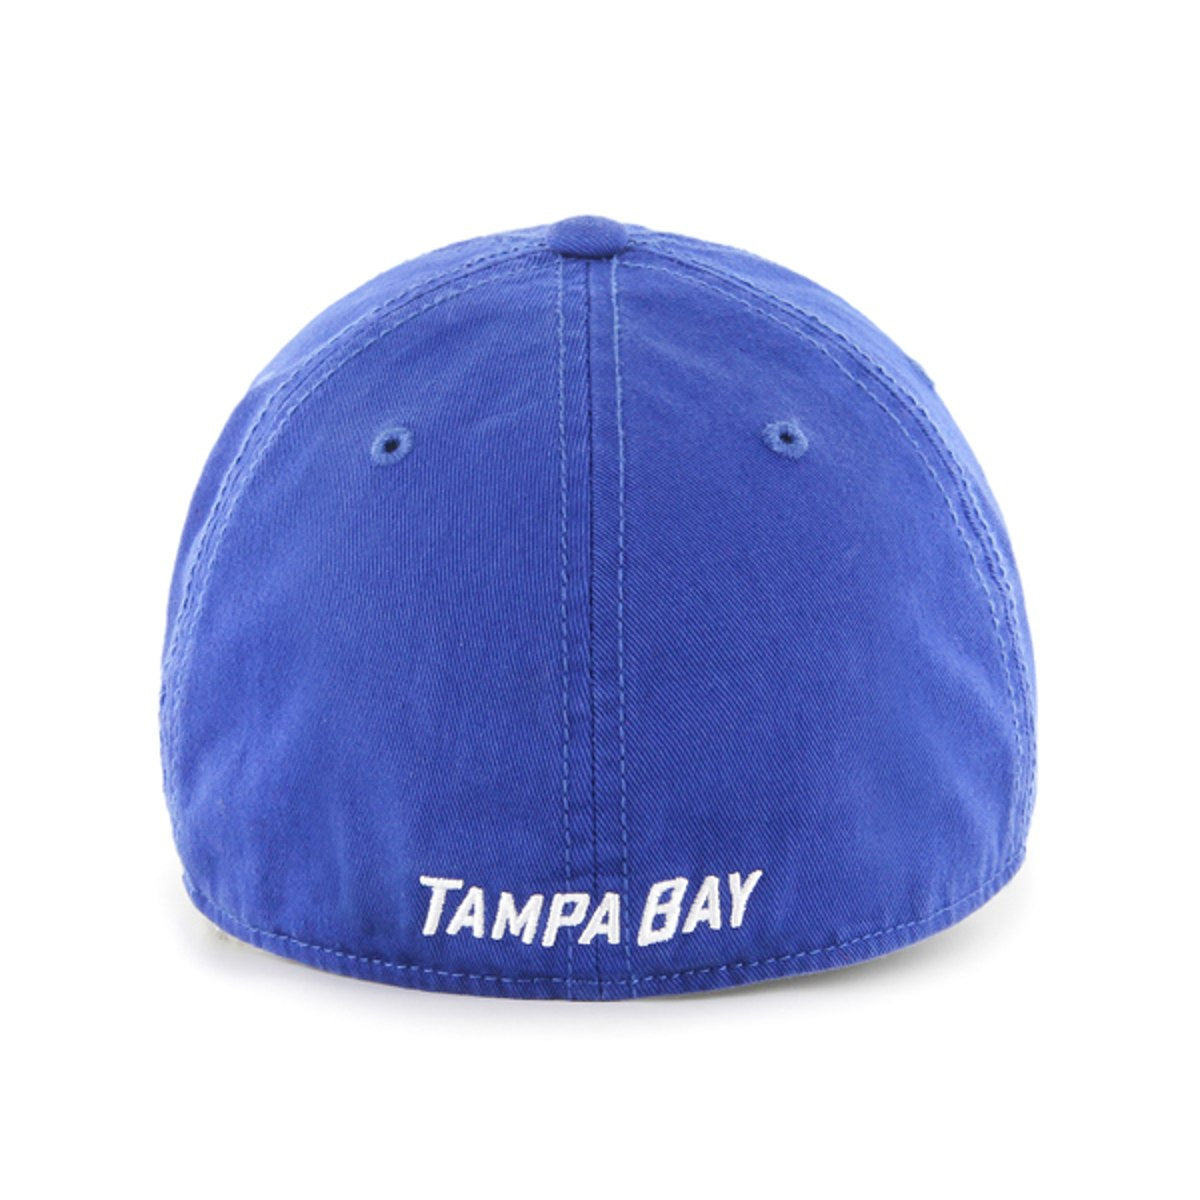 Tampa Bay Lightning '47 Royal Flex Fit Franchise Hat